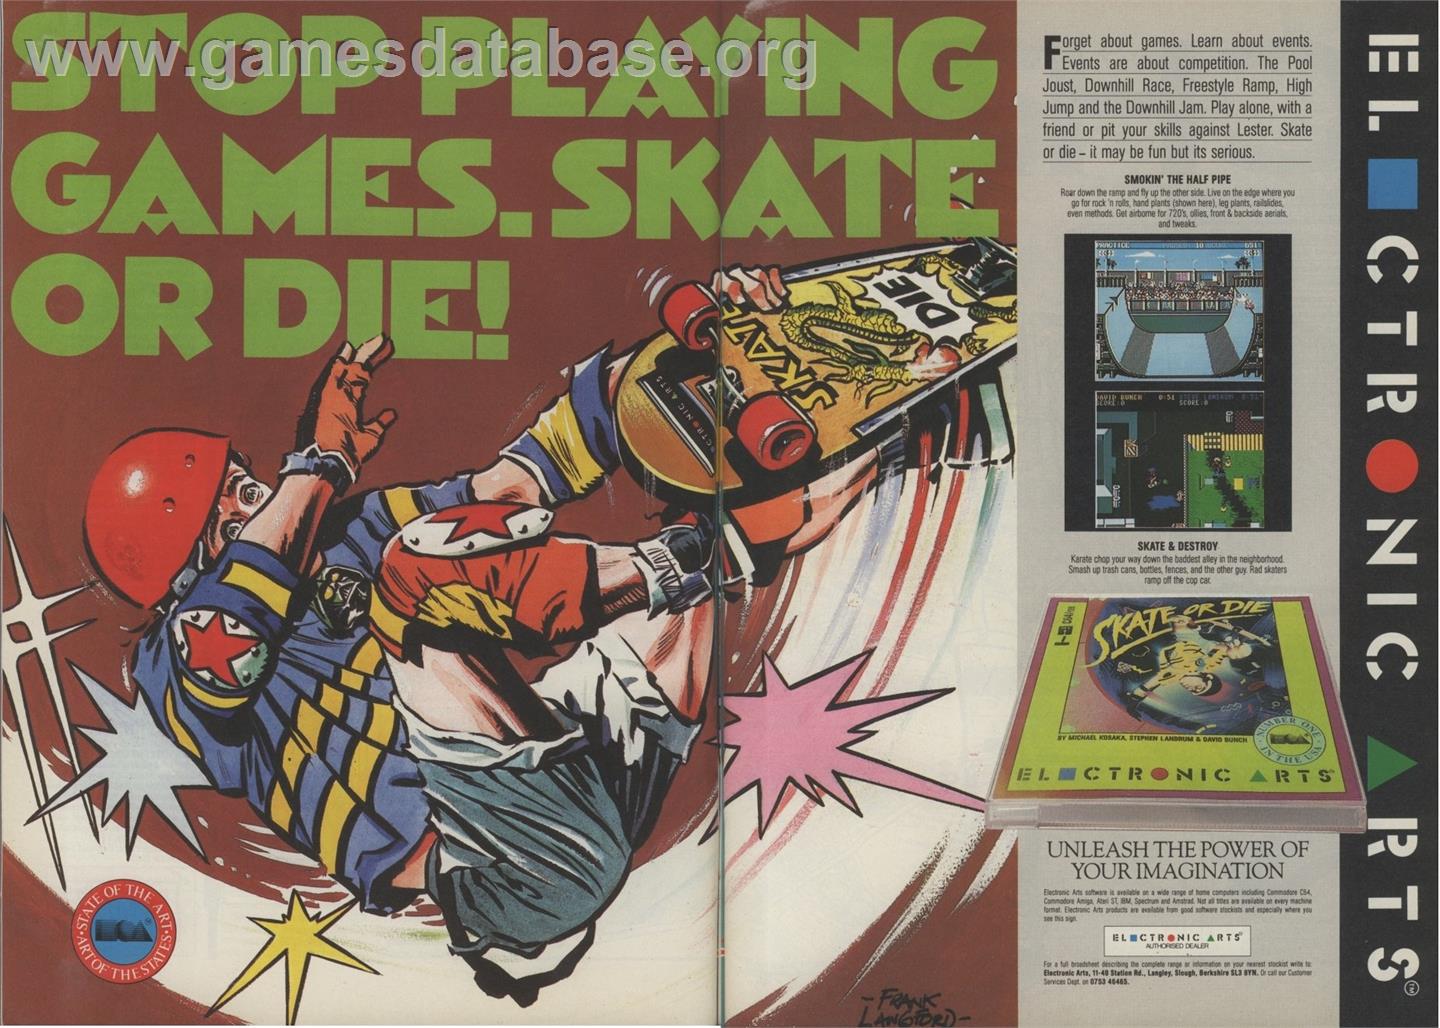 Skate or Die - Nintendo NES - Artwork - Advert